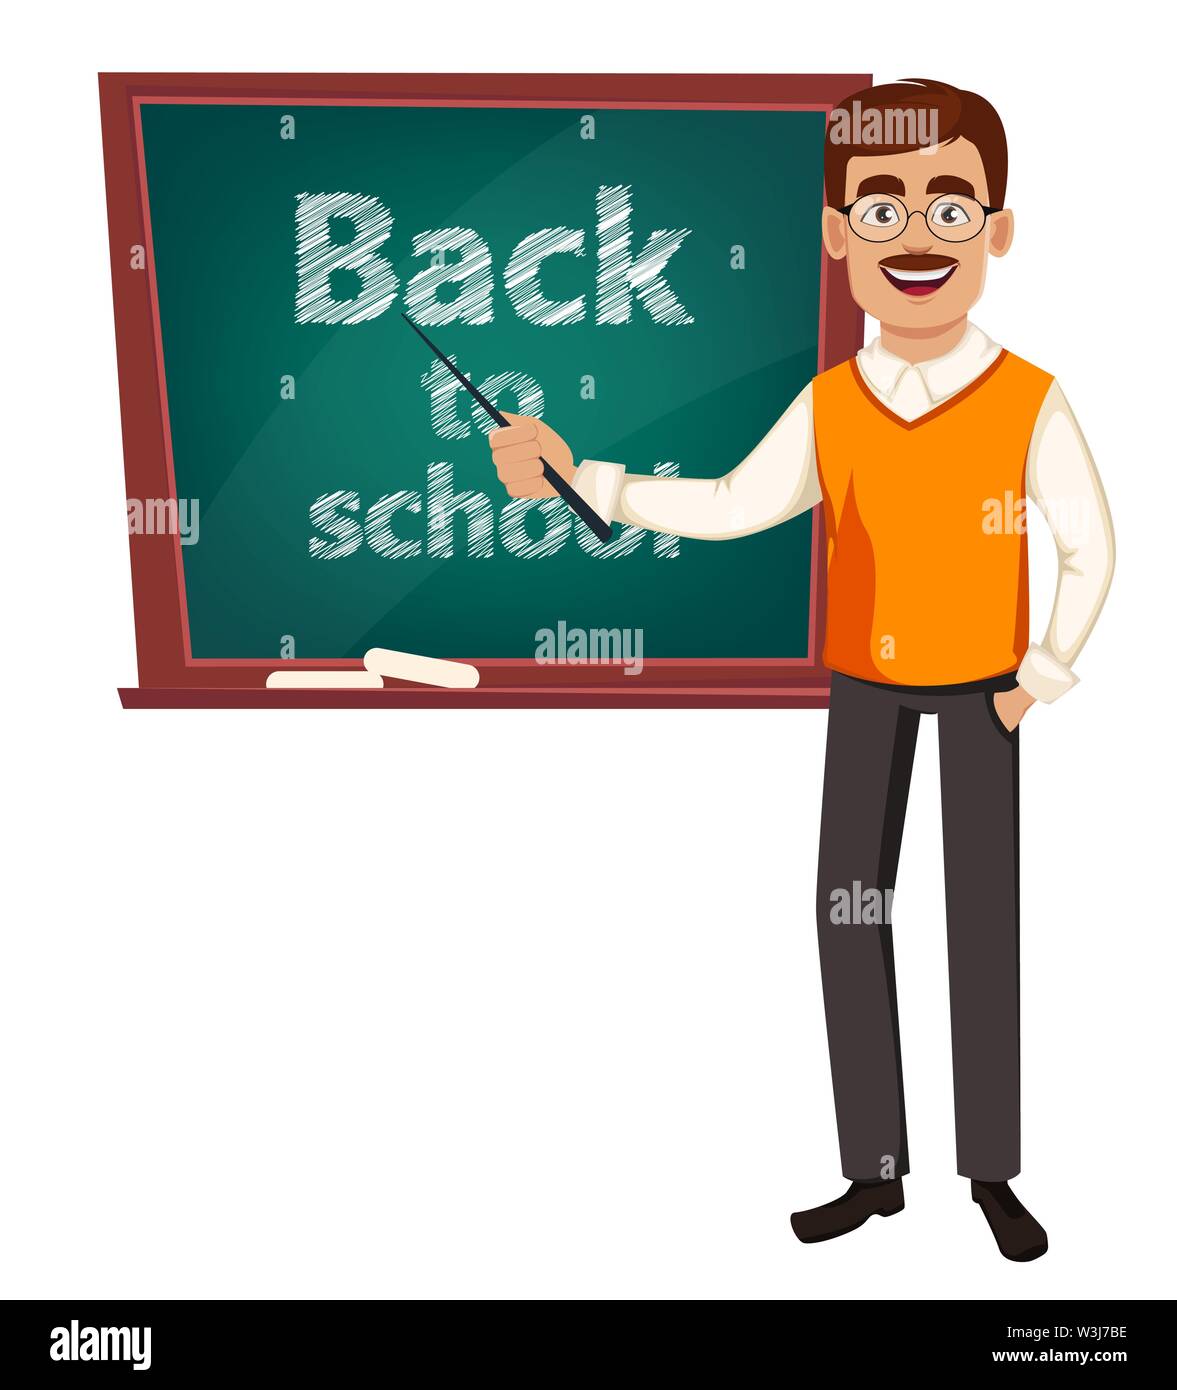 Zurück zu Schule. Lehrer Mann cartoon Charakter steht in der Nähe der Tafel. Teacher's Tag. Vector Illustration Stock Vektor